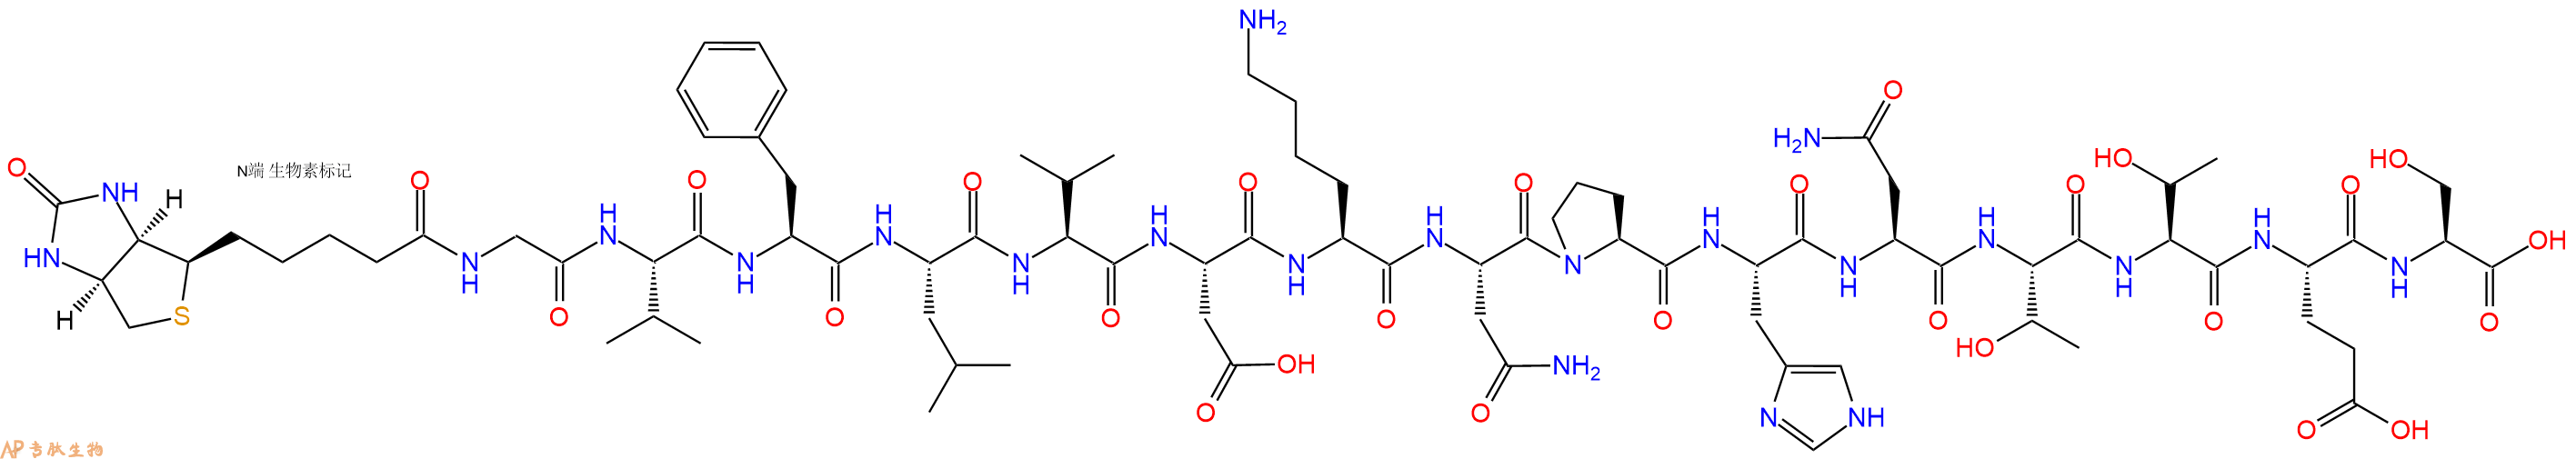 专肽生物产品Biotin-Gly-Val-Phe-Leu-Val-Asp-Lys-Asn-Pro-His-Asn